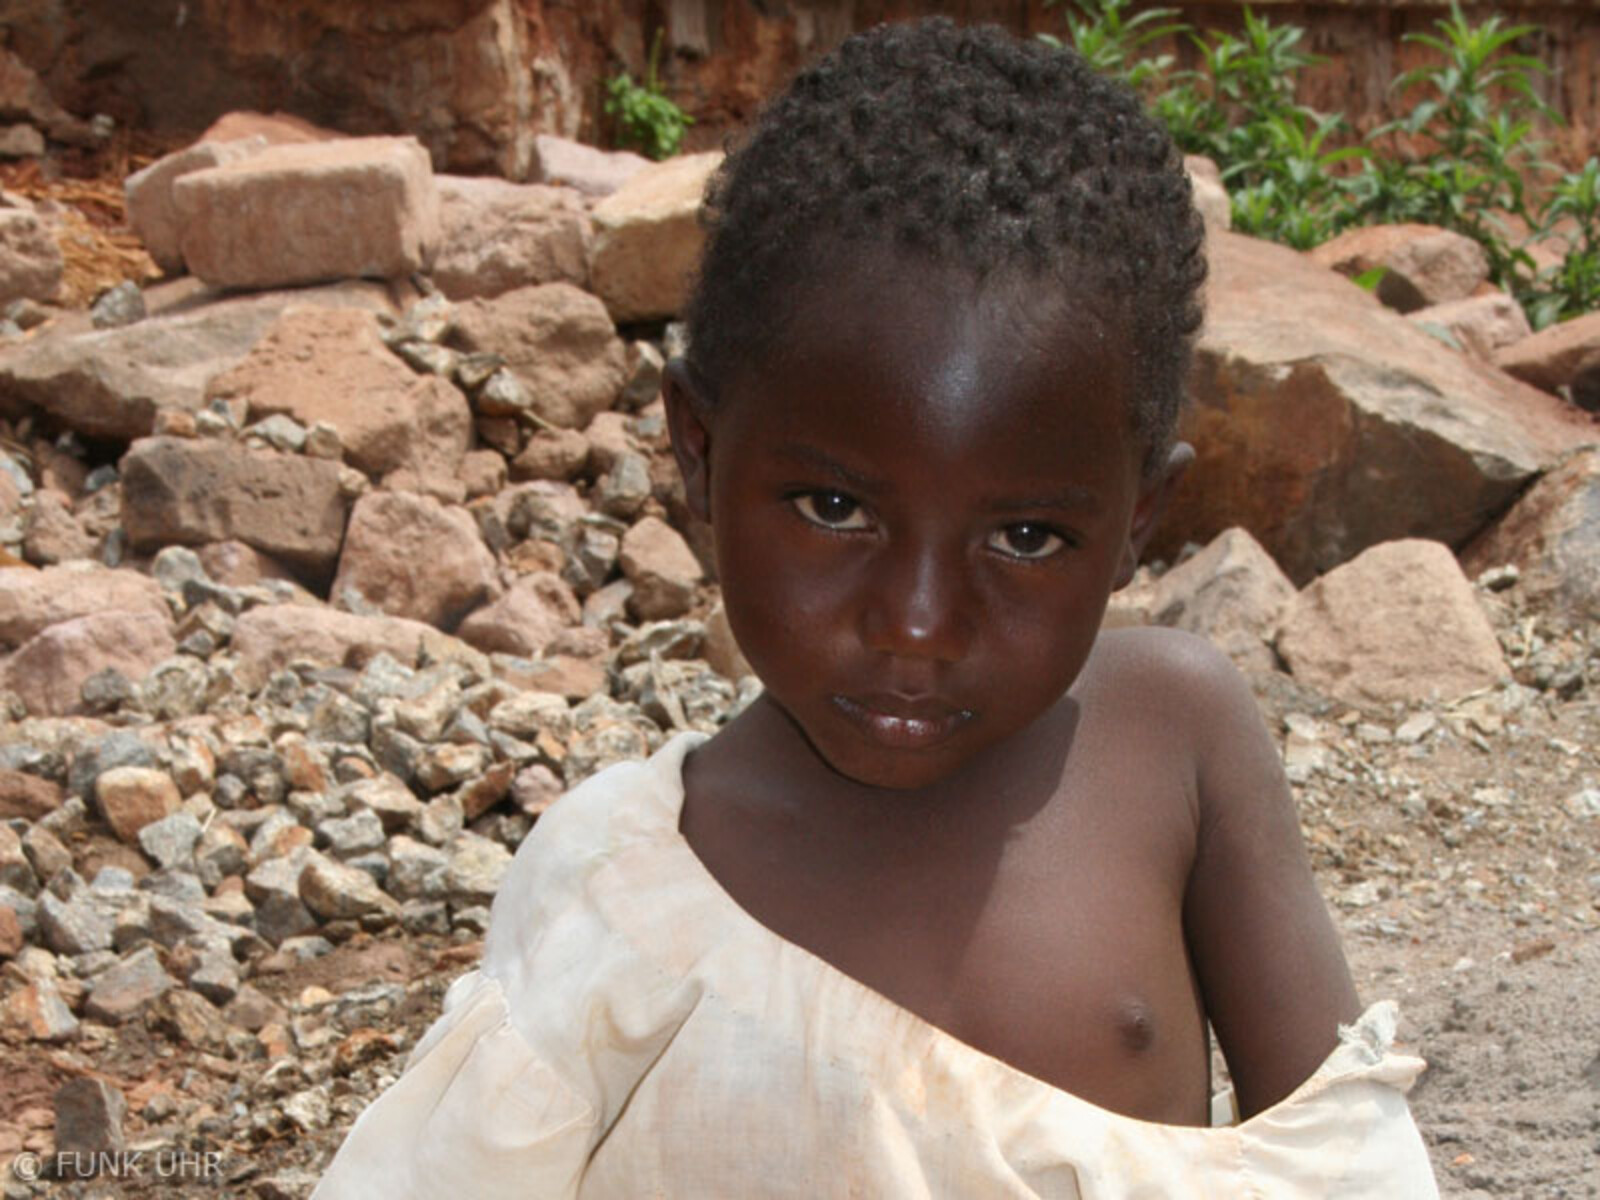 Dank „Hand in Hand für Afrika“ konnte Joyce mit Medikamenten versorgt und gerettet werden.